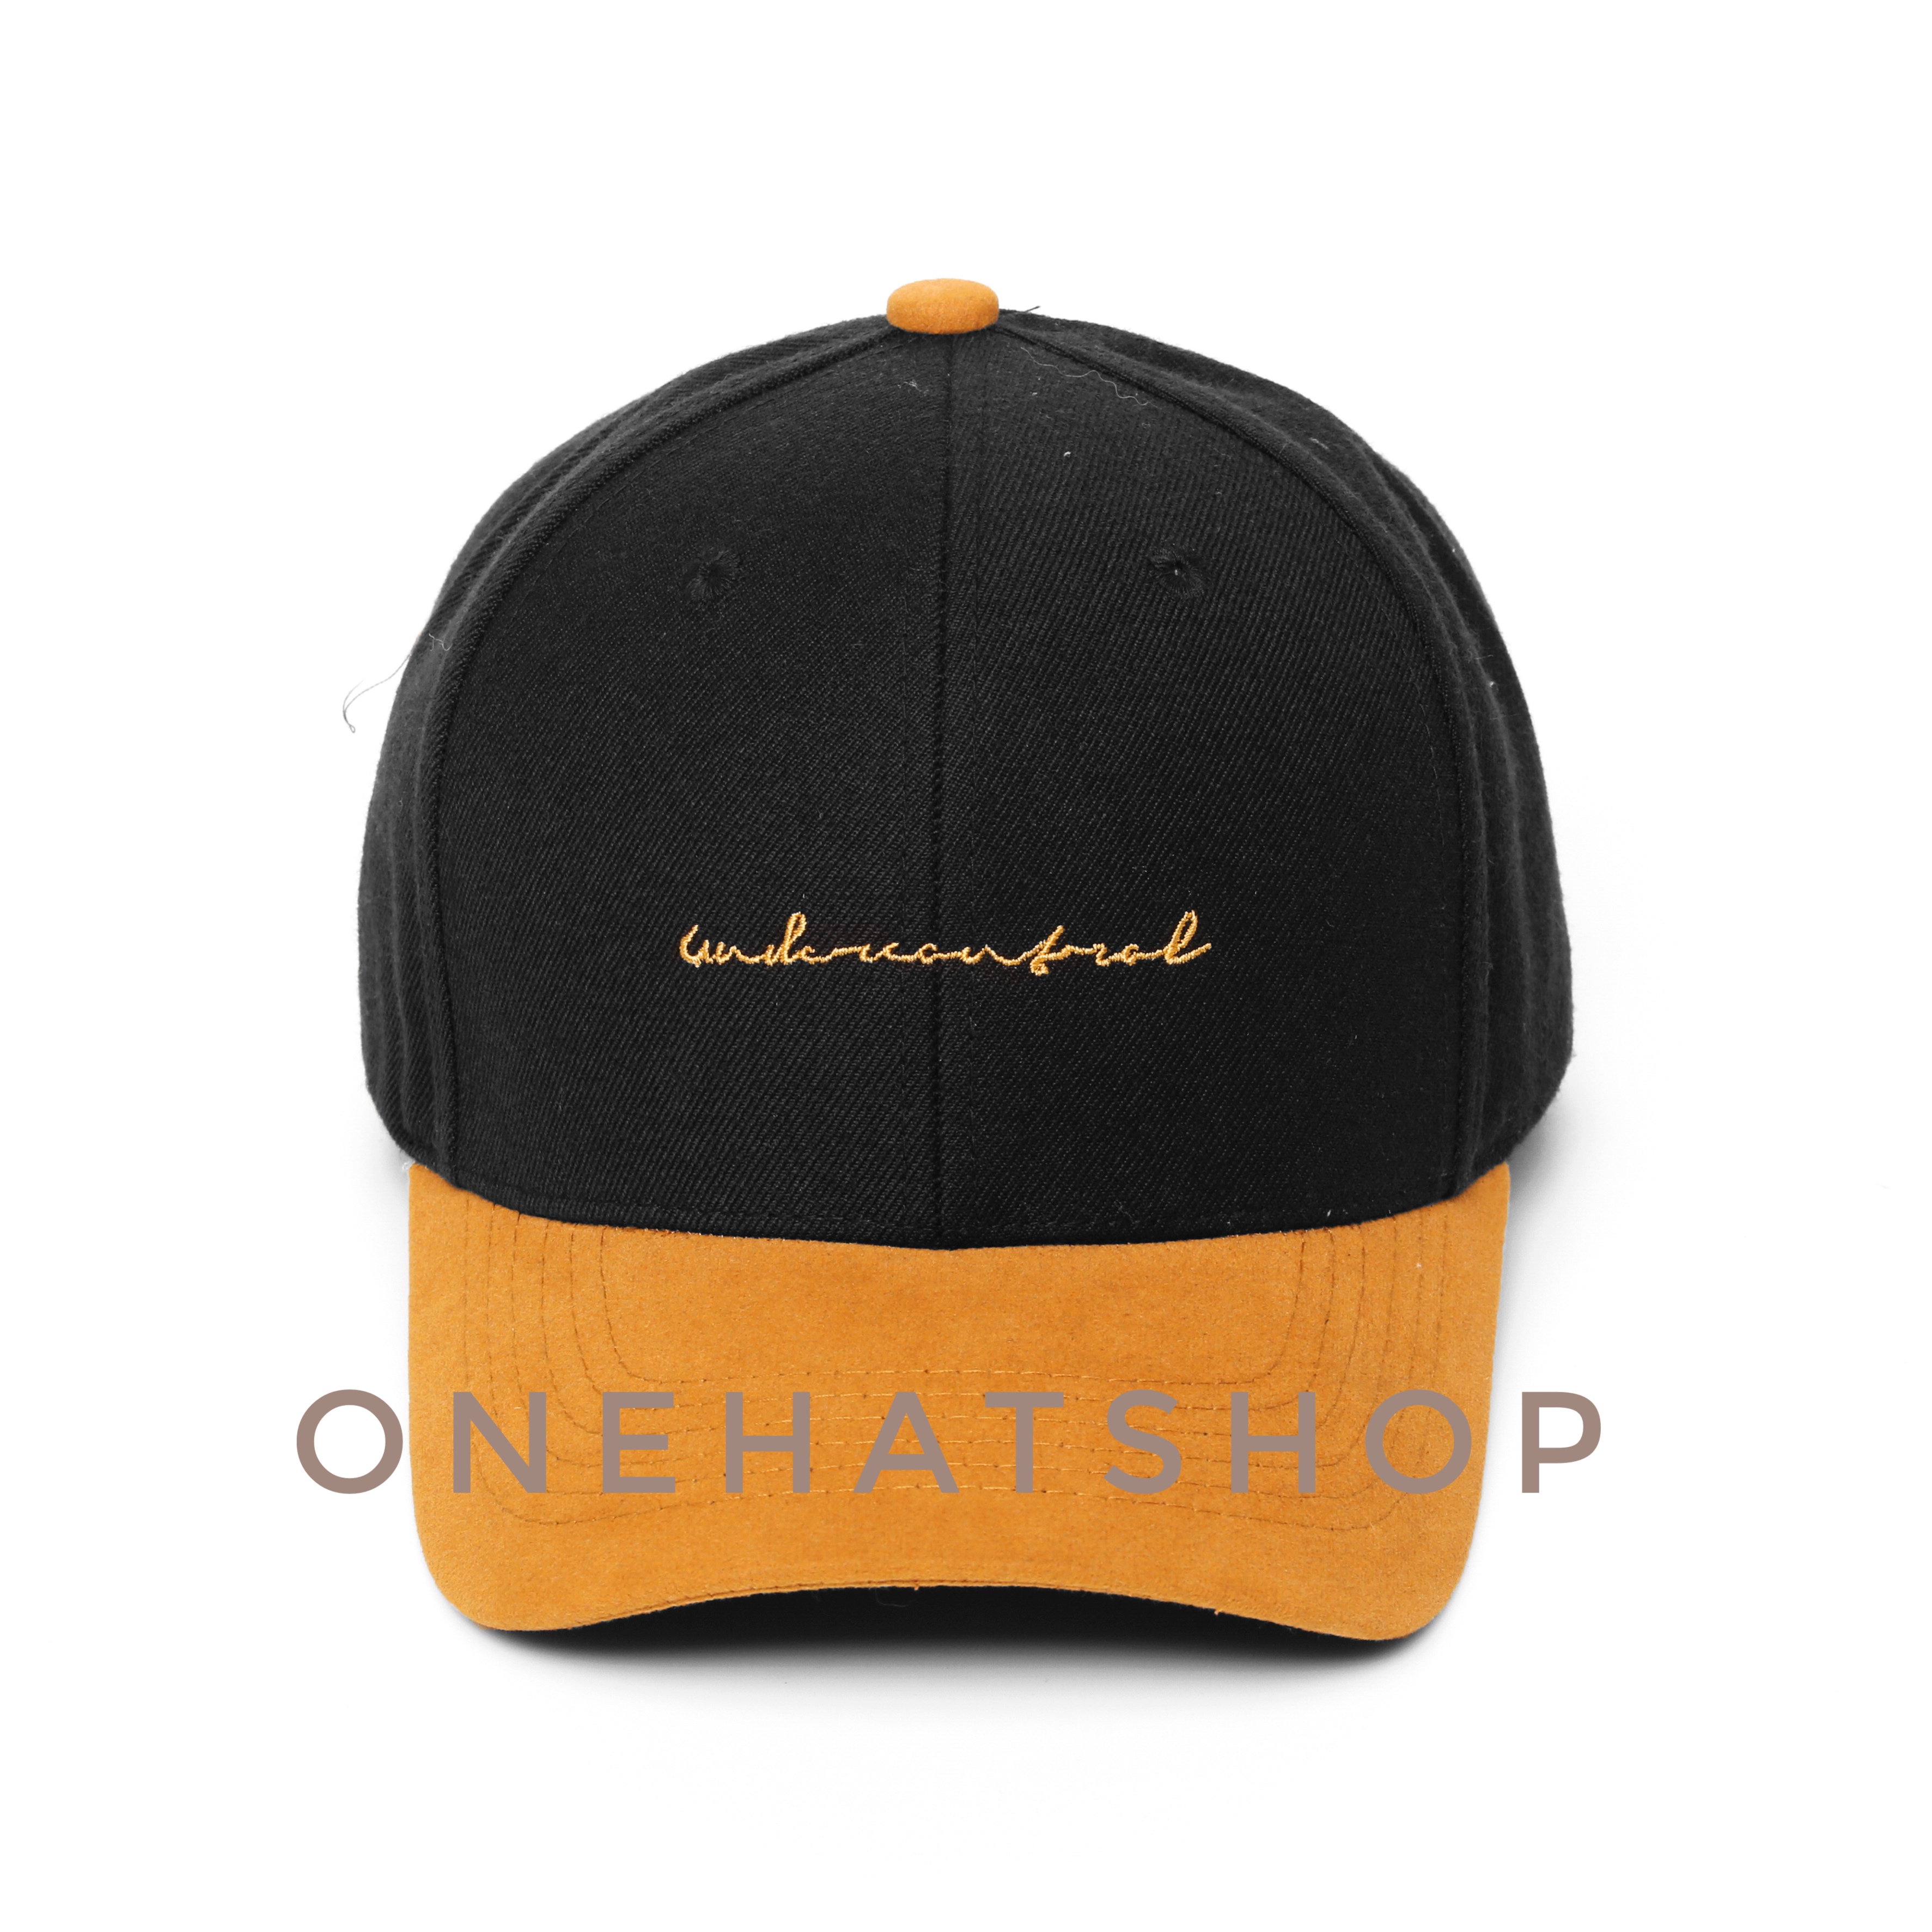 Nón kết đẹp logo Under vành cong màu vàng quai cài nút chất xịn Brand One Hat